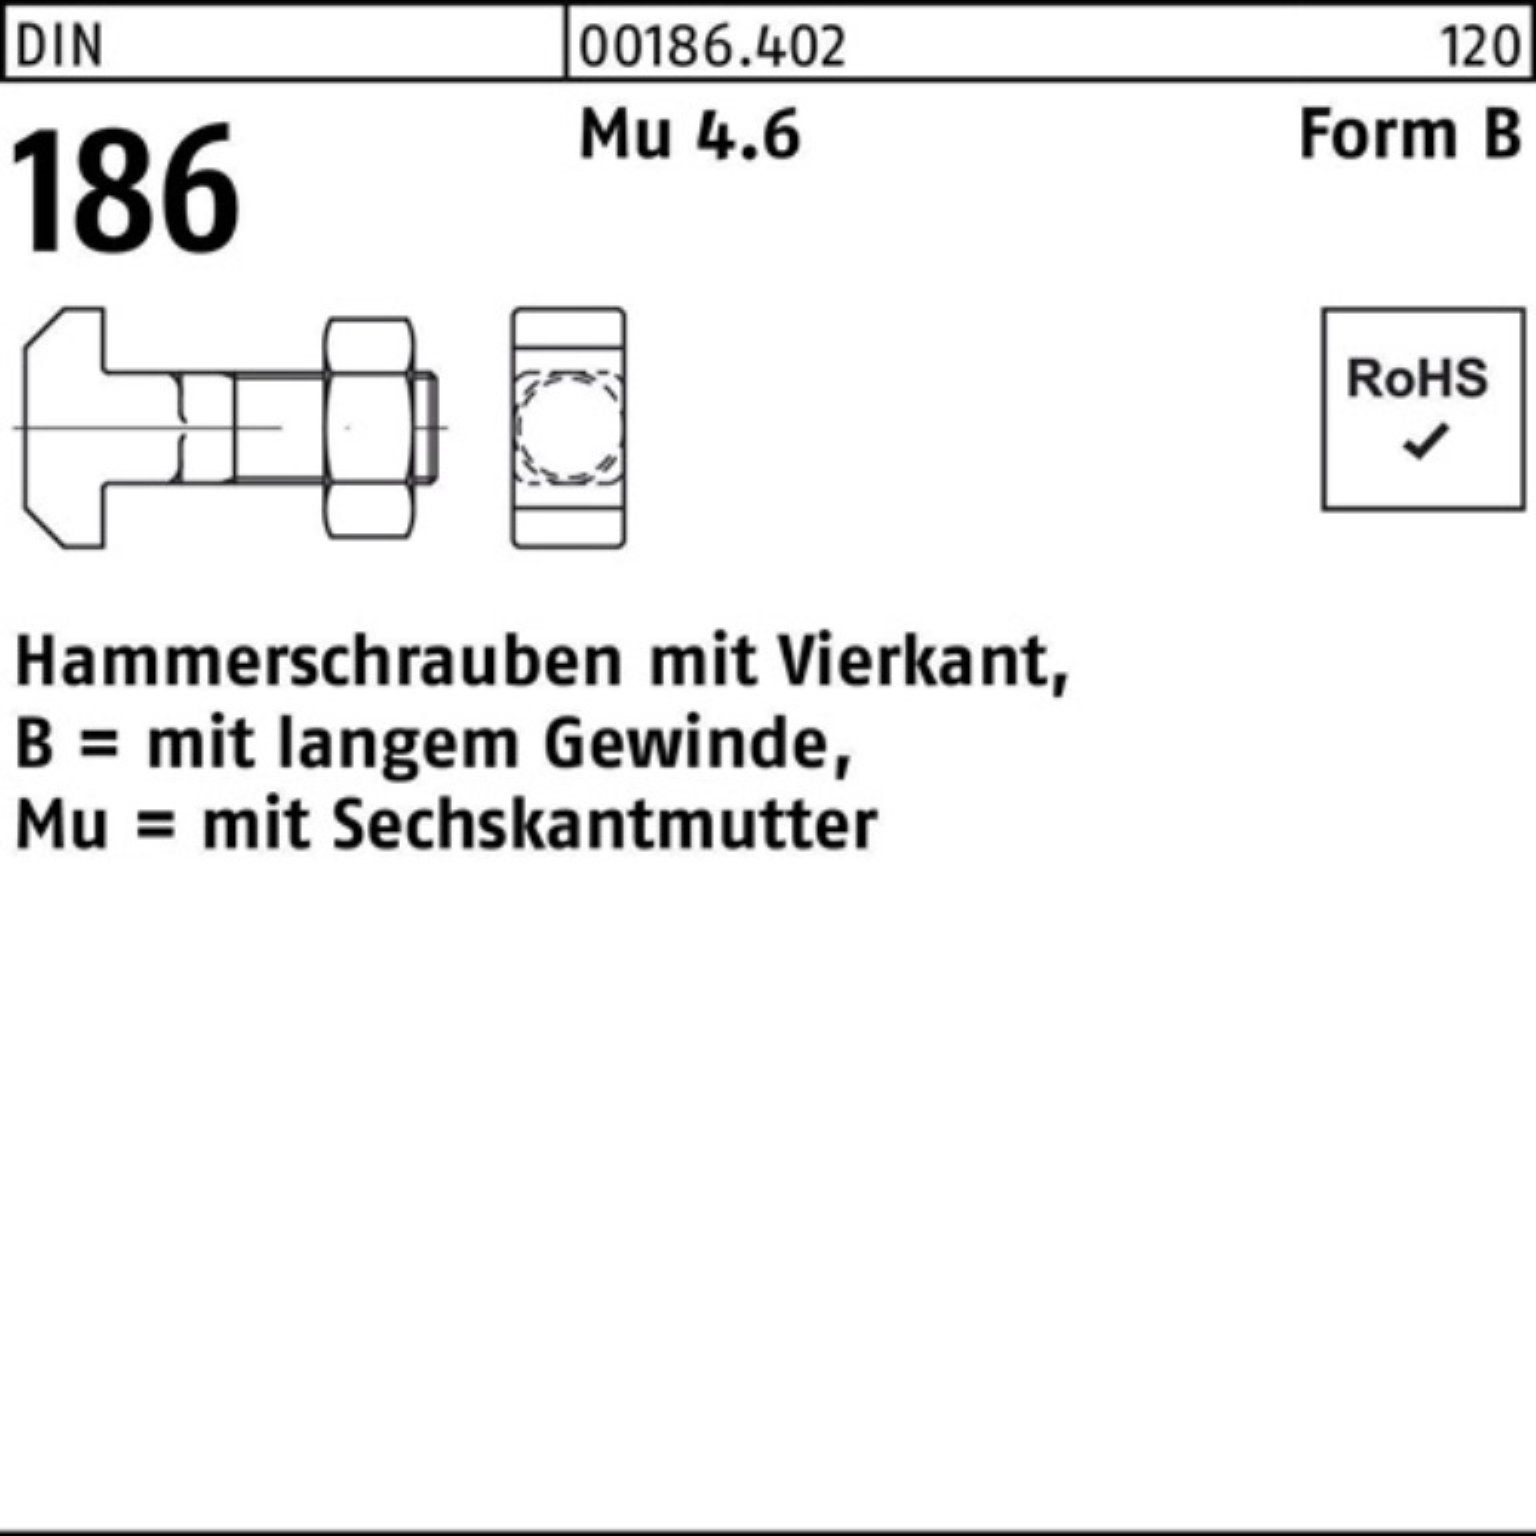 FormB 6-ktmutter Schraube 186 160 Vierkant Hammerschraube Reyher 24x 100er DIN BM Pack